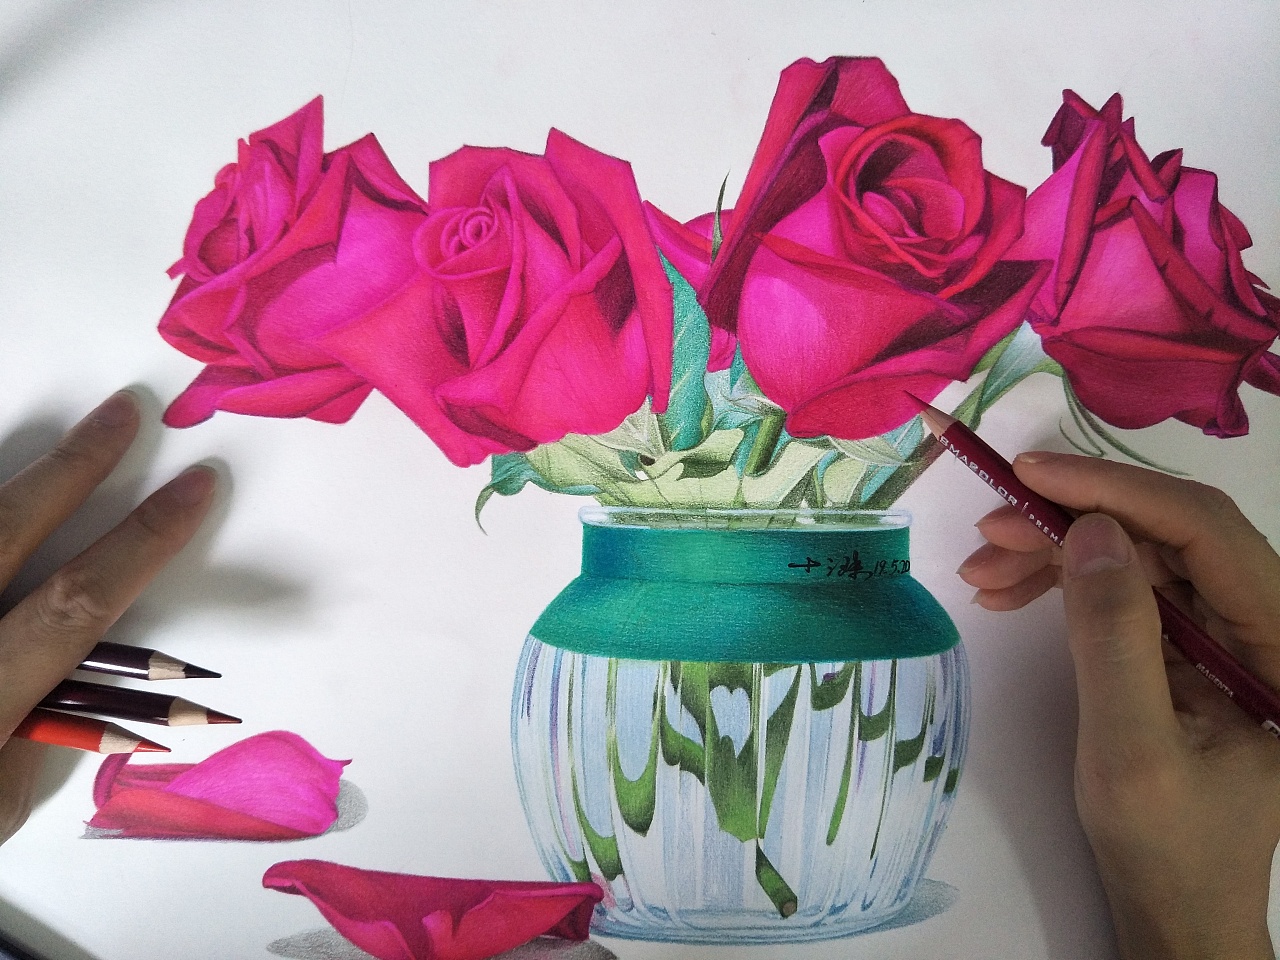 玫瑰花瓶插花水粉画图片